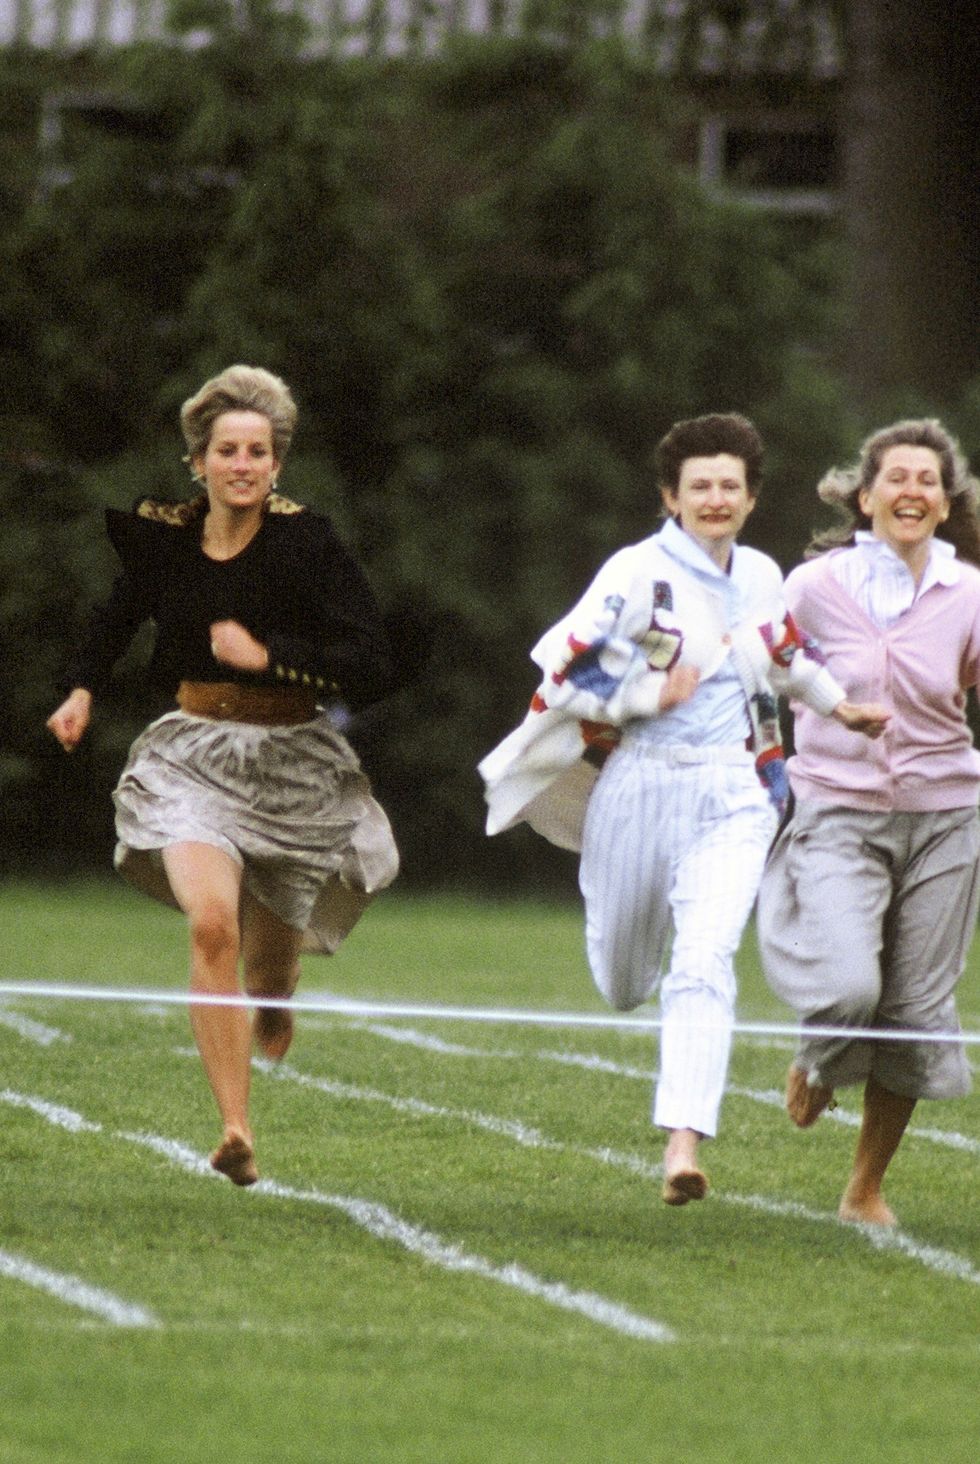 في عام 1991، ركضت الأميرة ديانا حافية القدمين عندما شاركت في سباق للأمهات